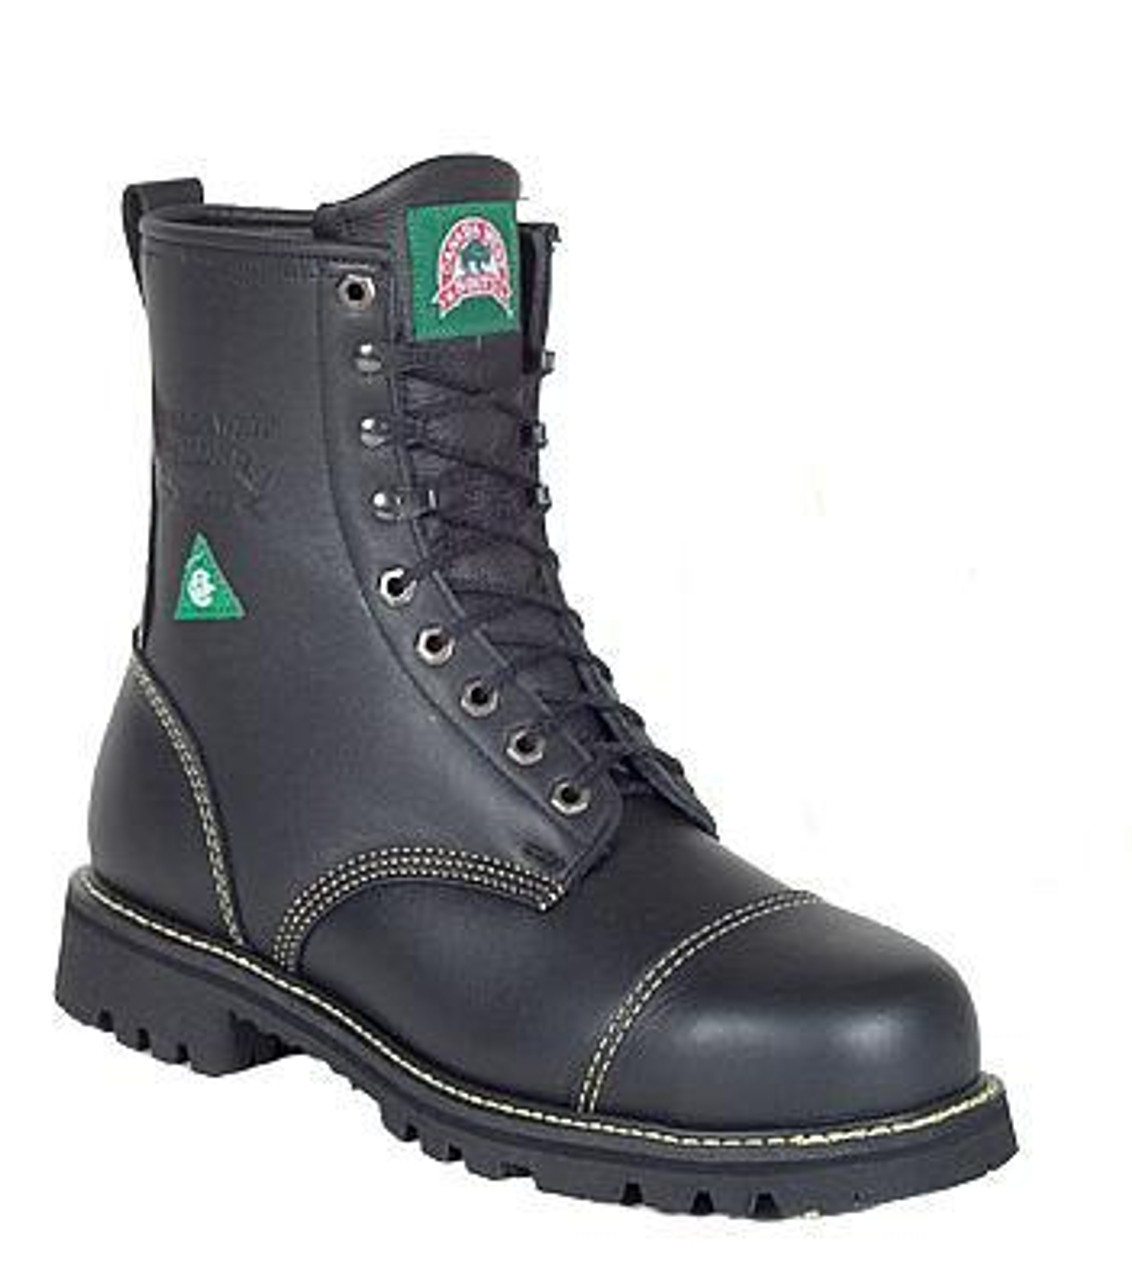 welders boots